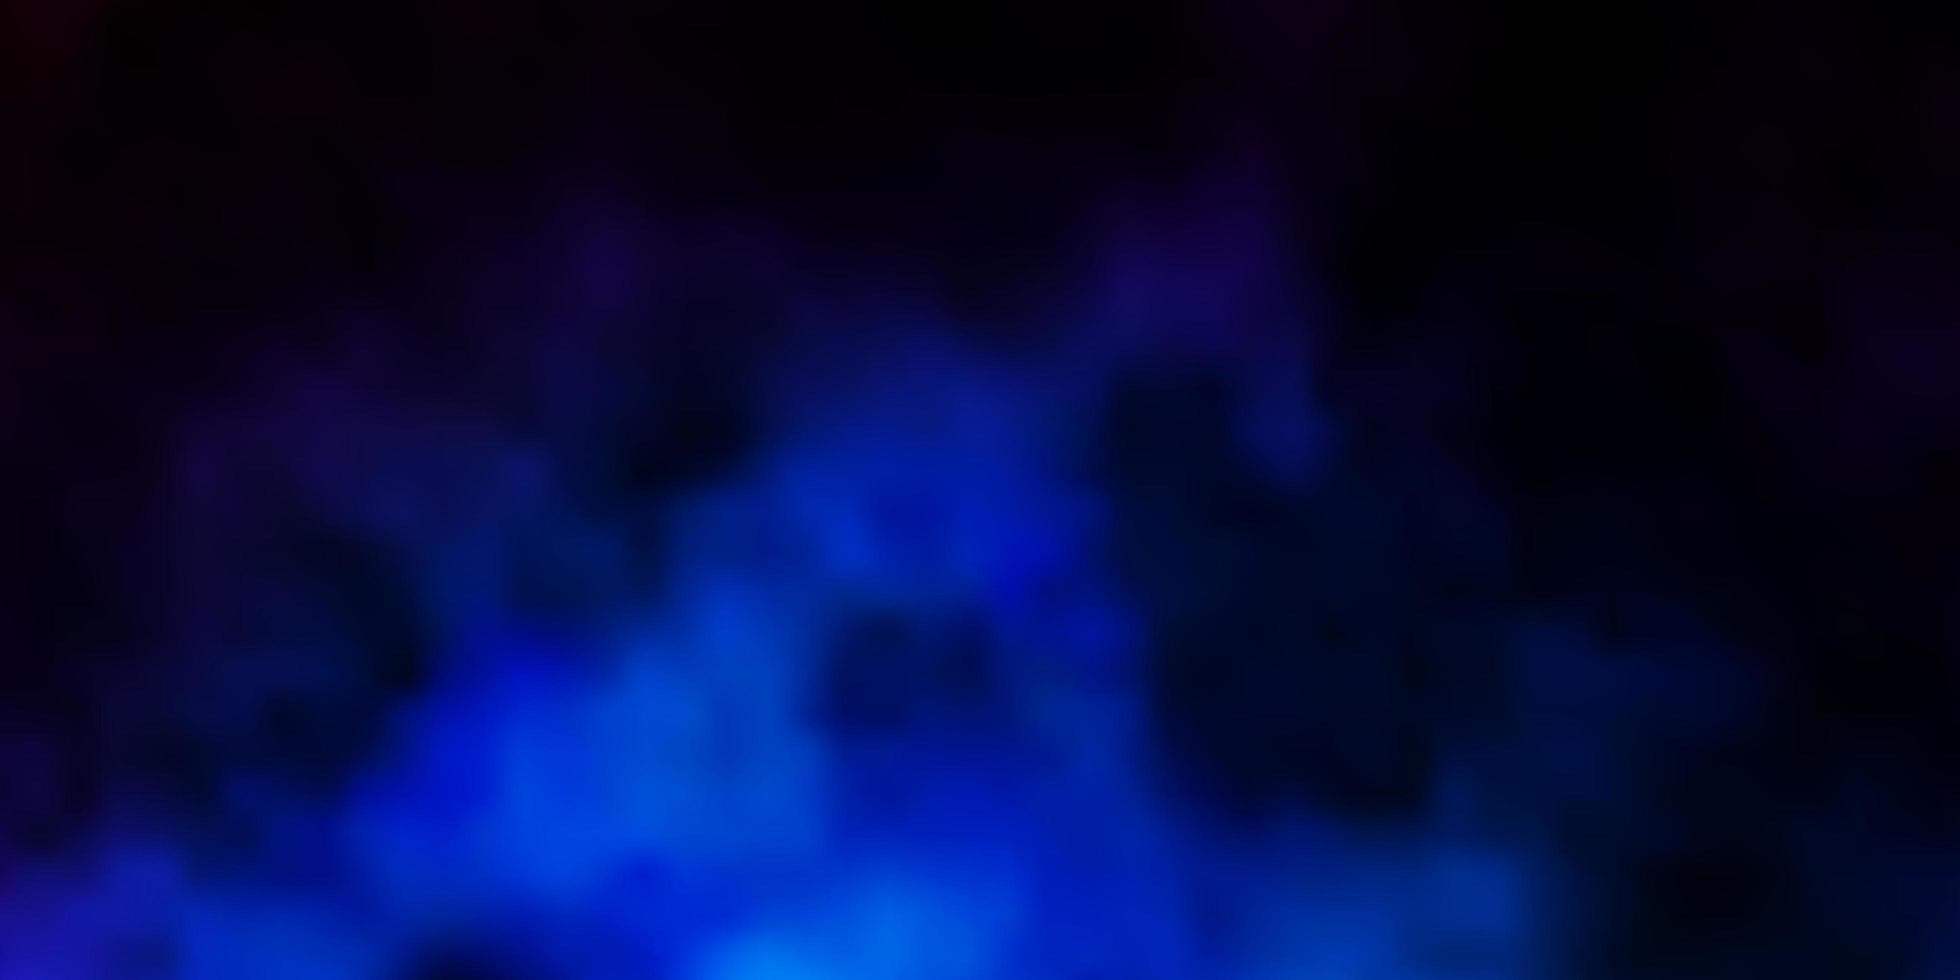 sfondo vettoriale blu scuro con illustrazione astratta cumulo con motivo a nuvole sfumate colorate per i tuoi annunci pubblicitari